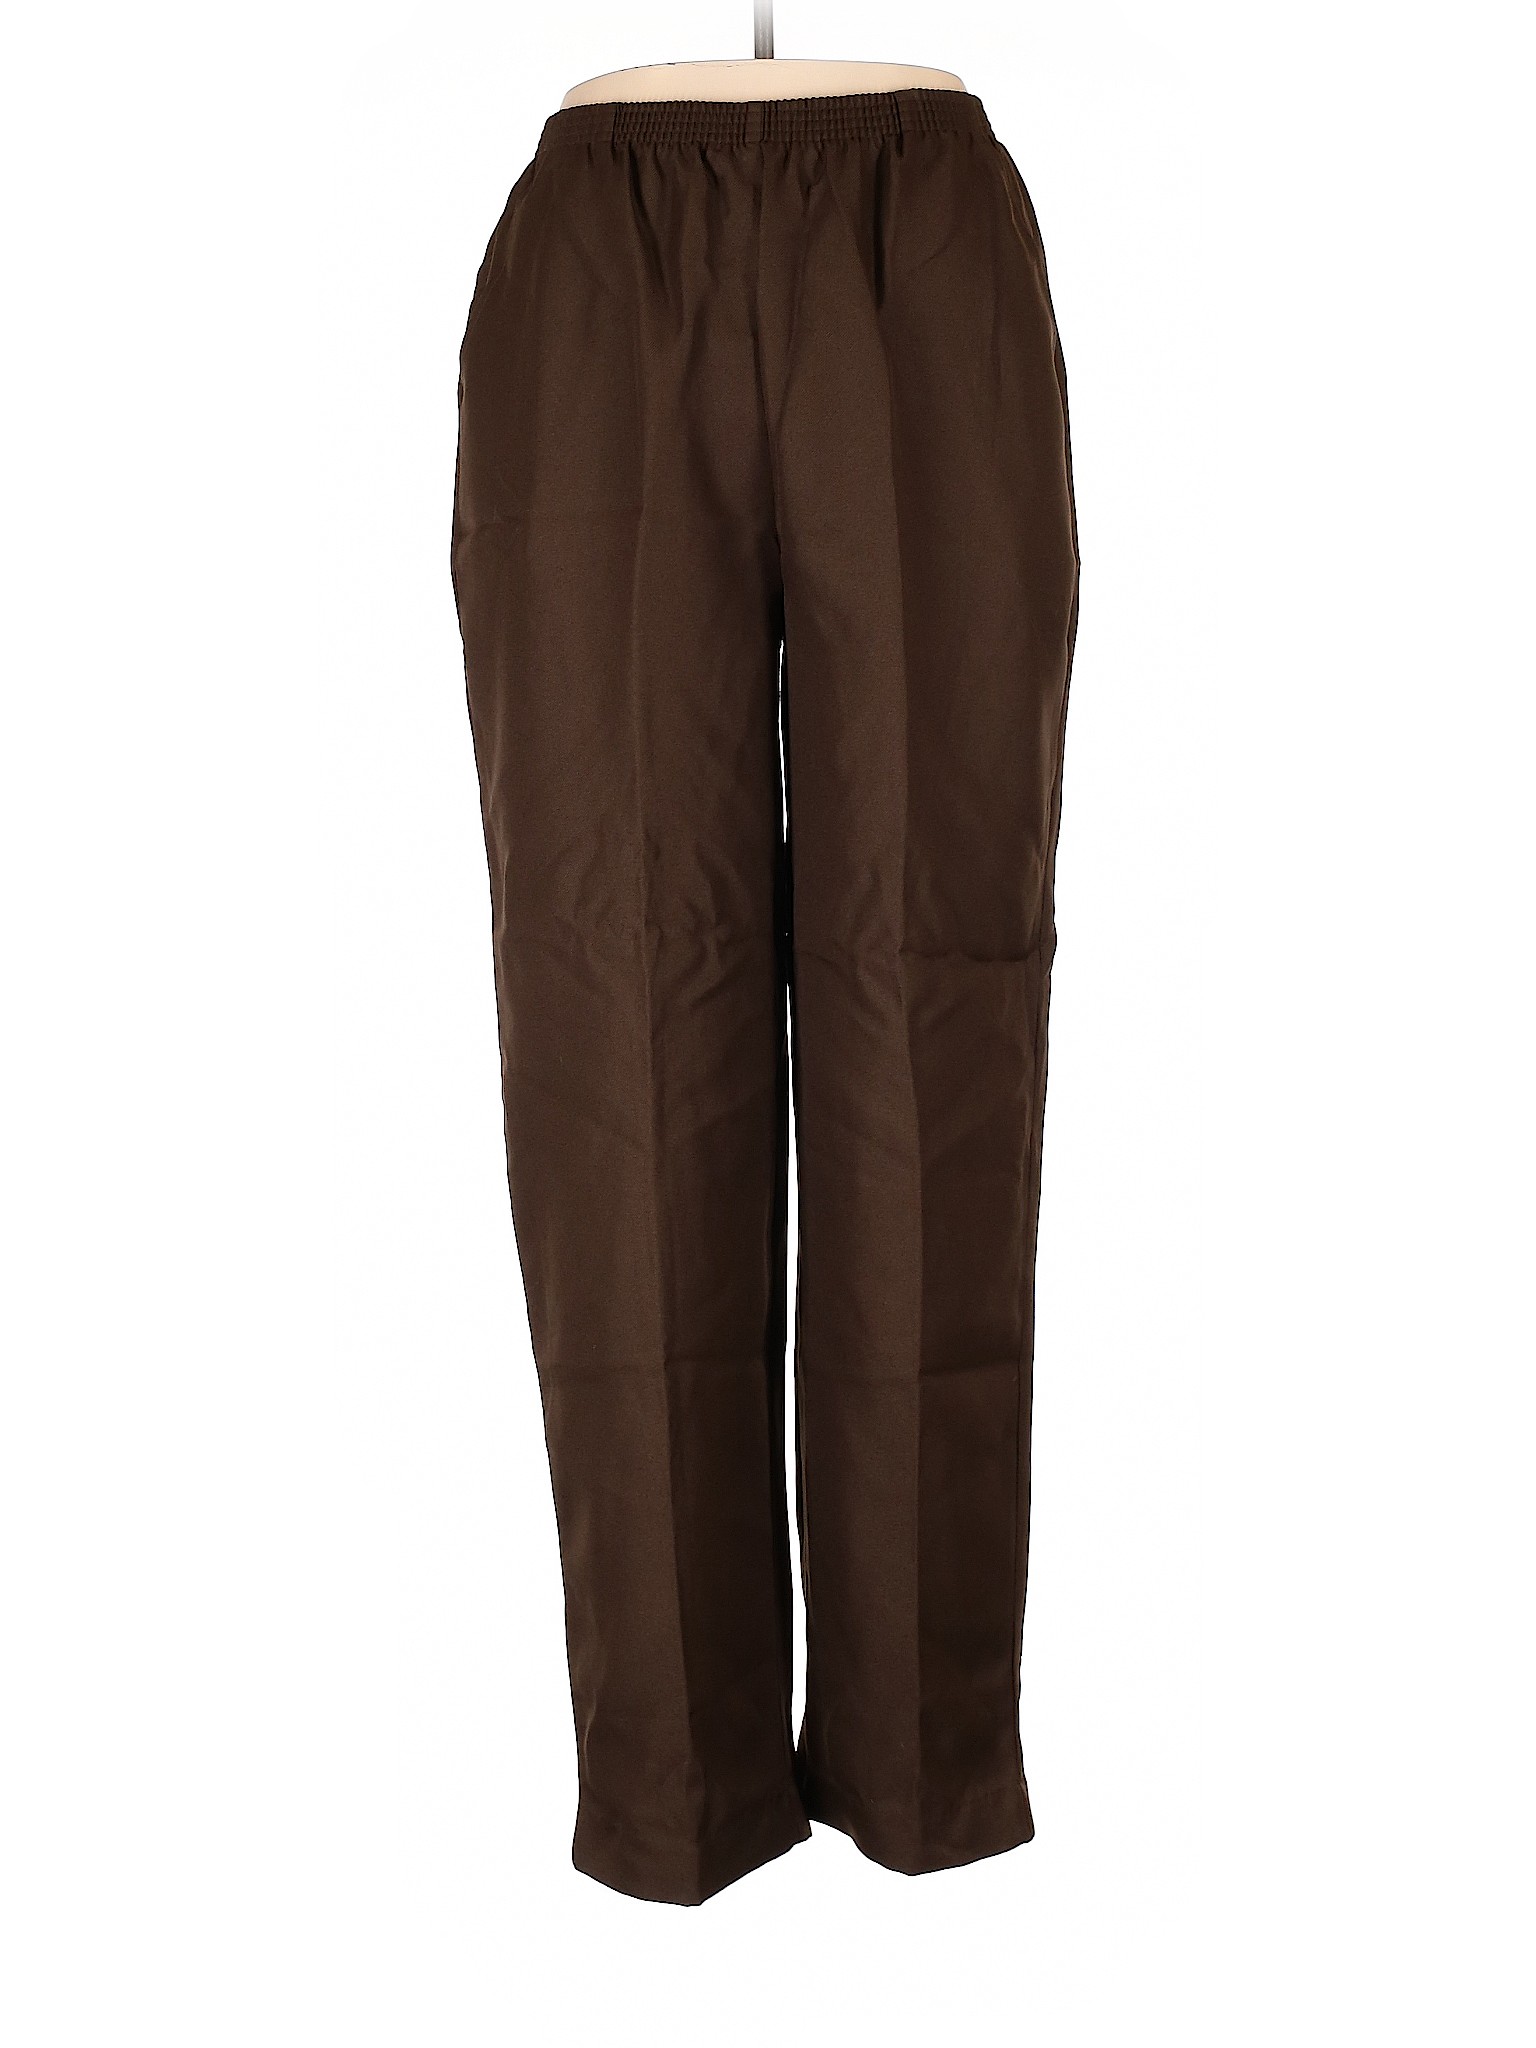 Blair Women Brown Dress Pants 16 | eBay